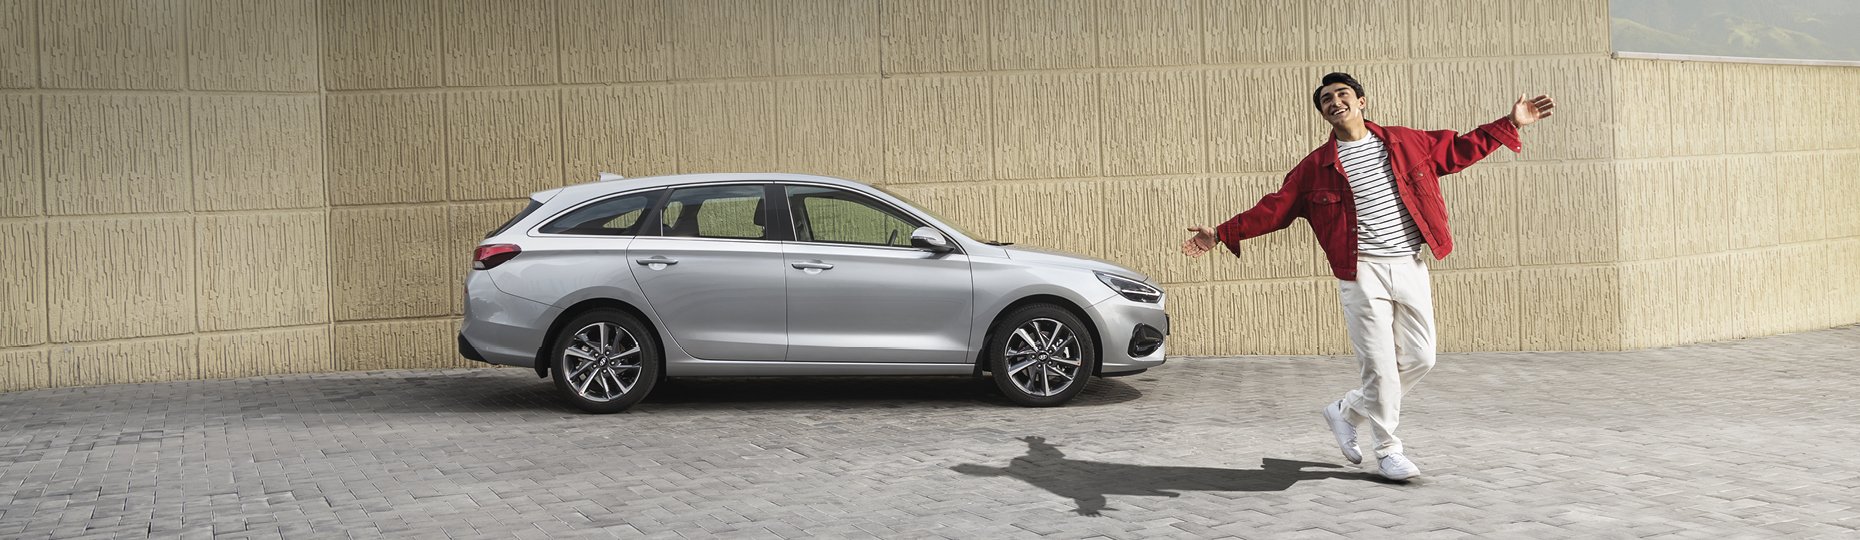 Купить новый Hyundai i30 у официального дилера в Шымкенте